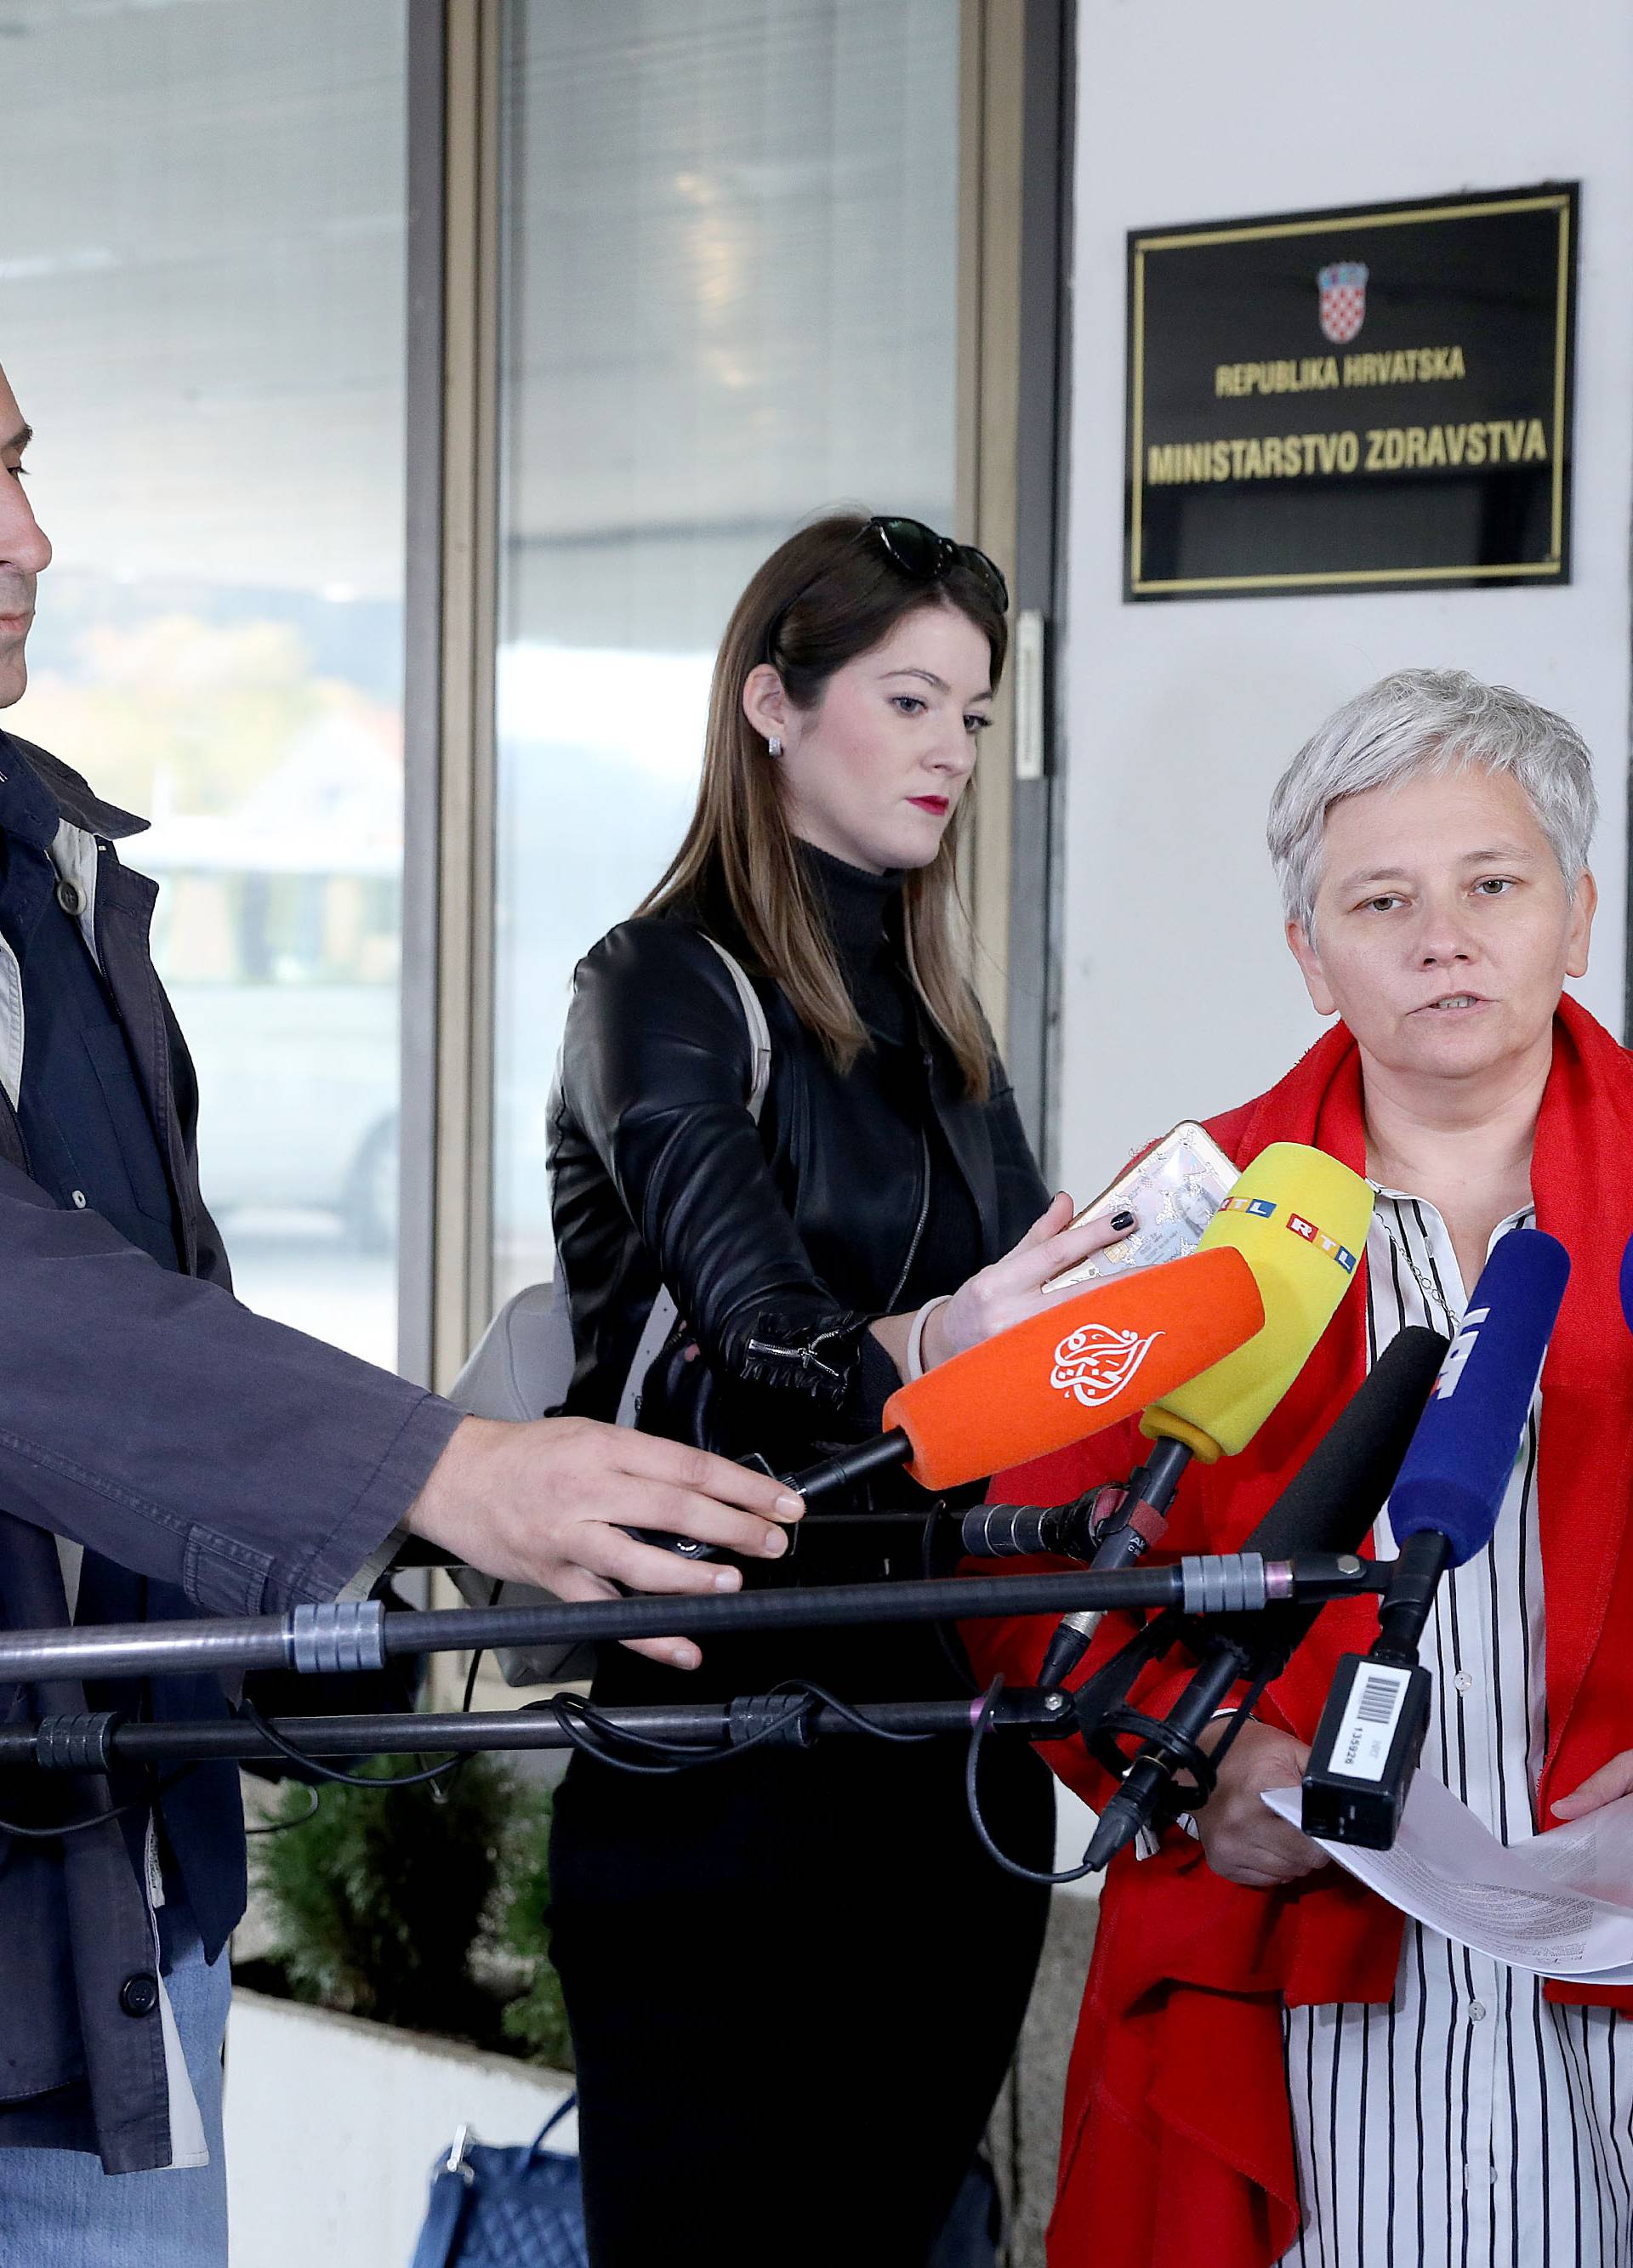 Zagreb: Ministarstvu zdravstva predana potresna svjedoÄanstva Å¾ena